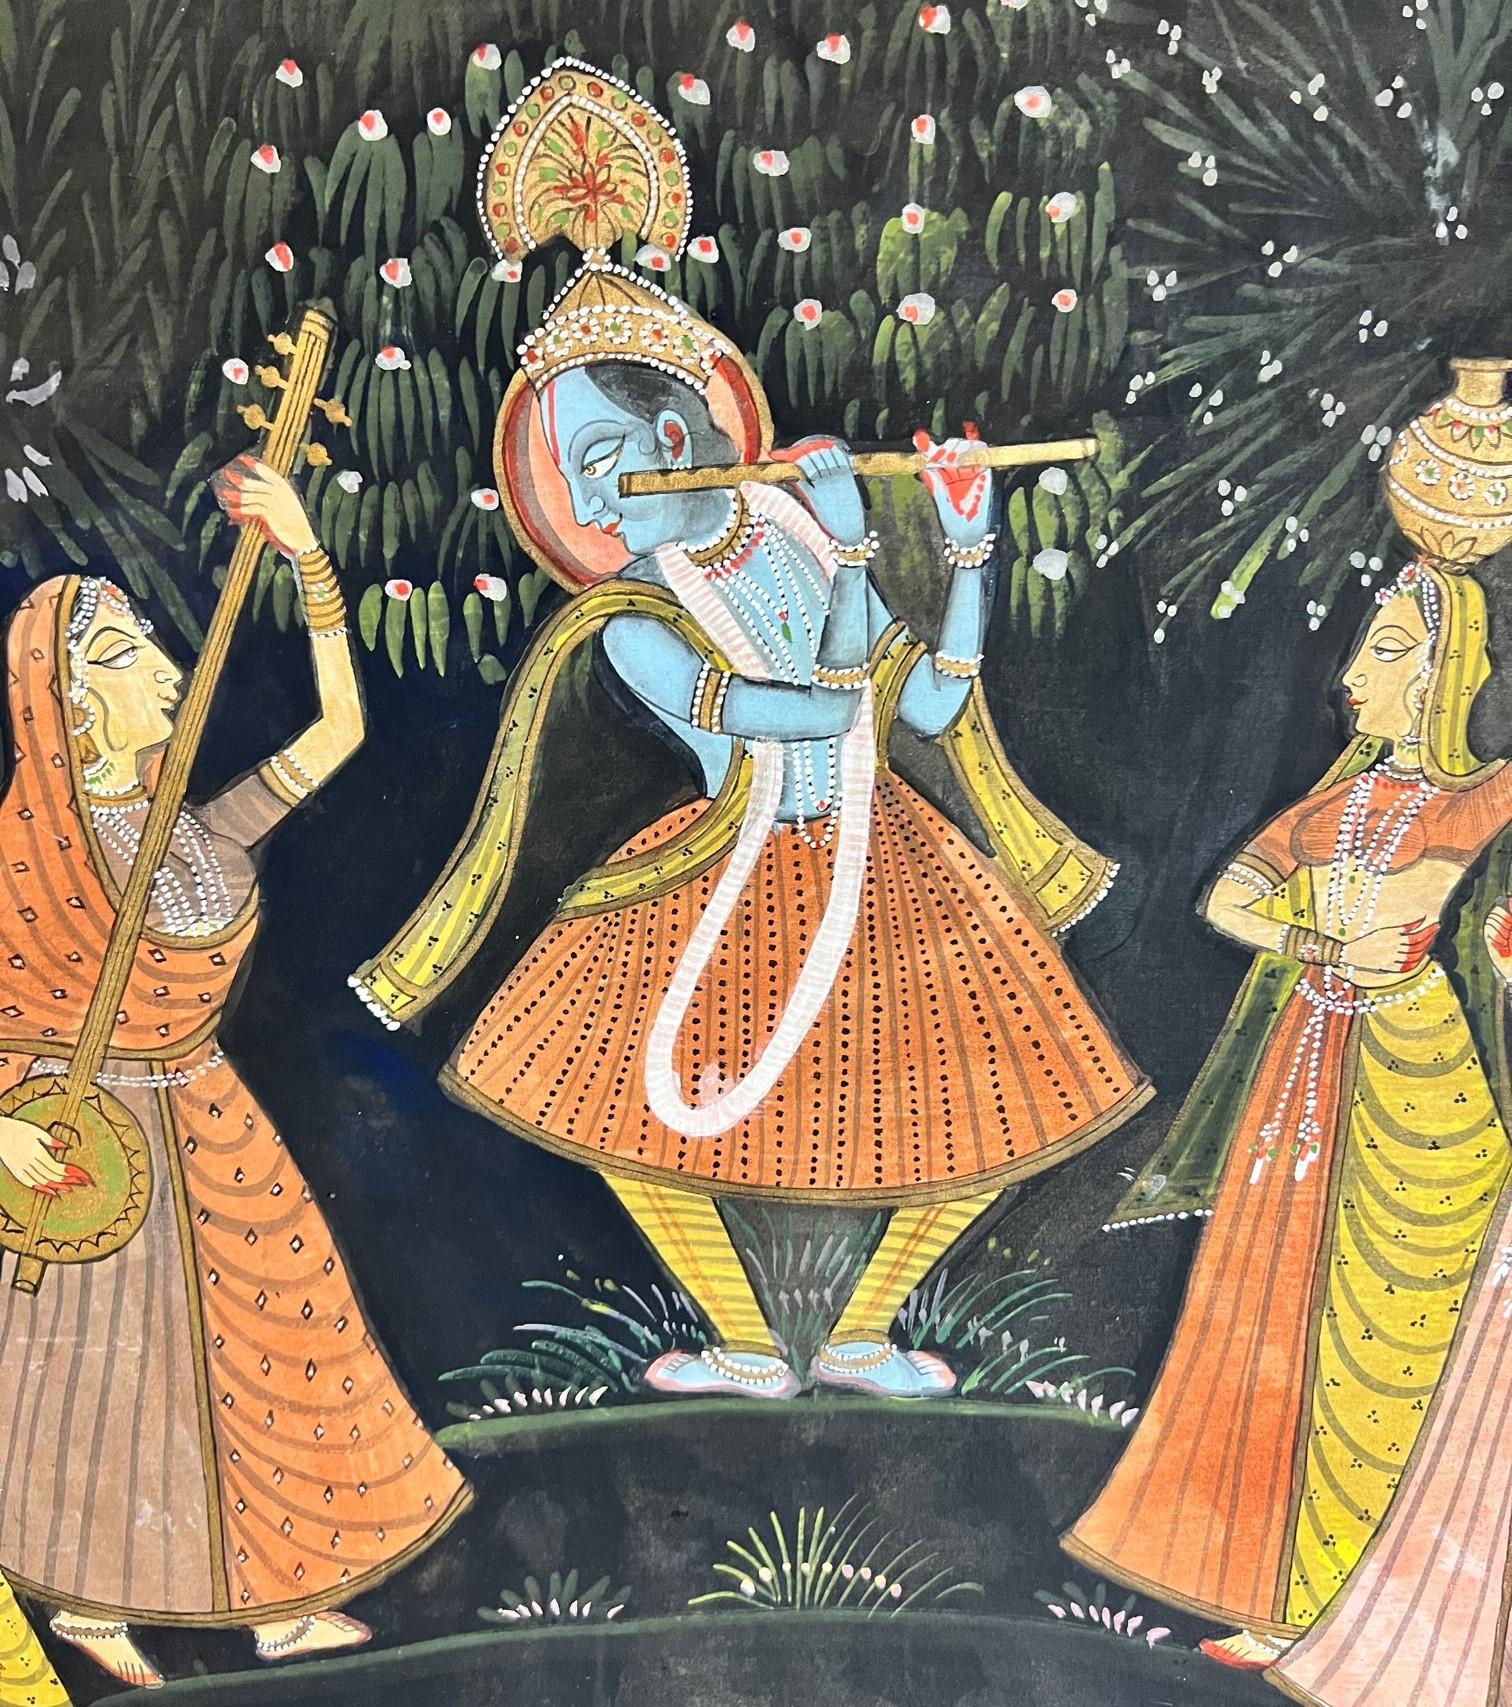 Vintage Pichhavai Malerei auf Stoff von Krishna spielen ist Flöte mit Radha und weiblichen Gopis an seiner Seite versammelt. Die Farben, Details und Gesichtsausdrücke der auf diesem Gemälde dargestellten Figuren sind sehr beeindruckend. 

Pichhavai